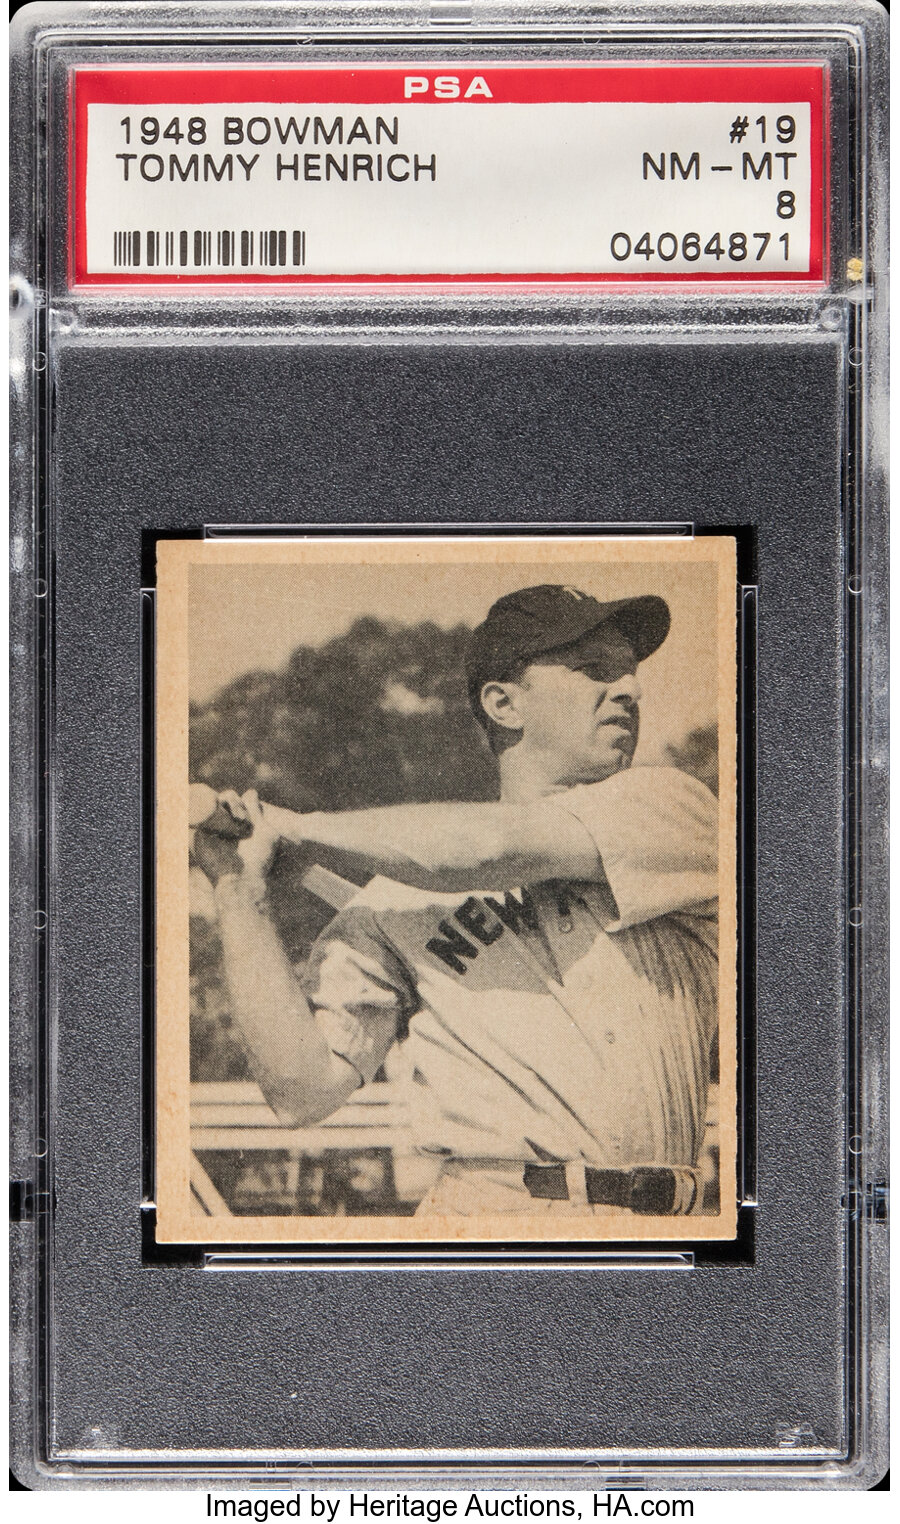 1948 Bowman Tommy Henrich #19 PSA NM-MT 8